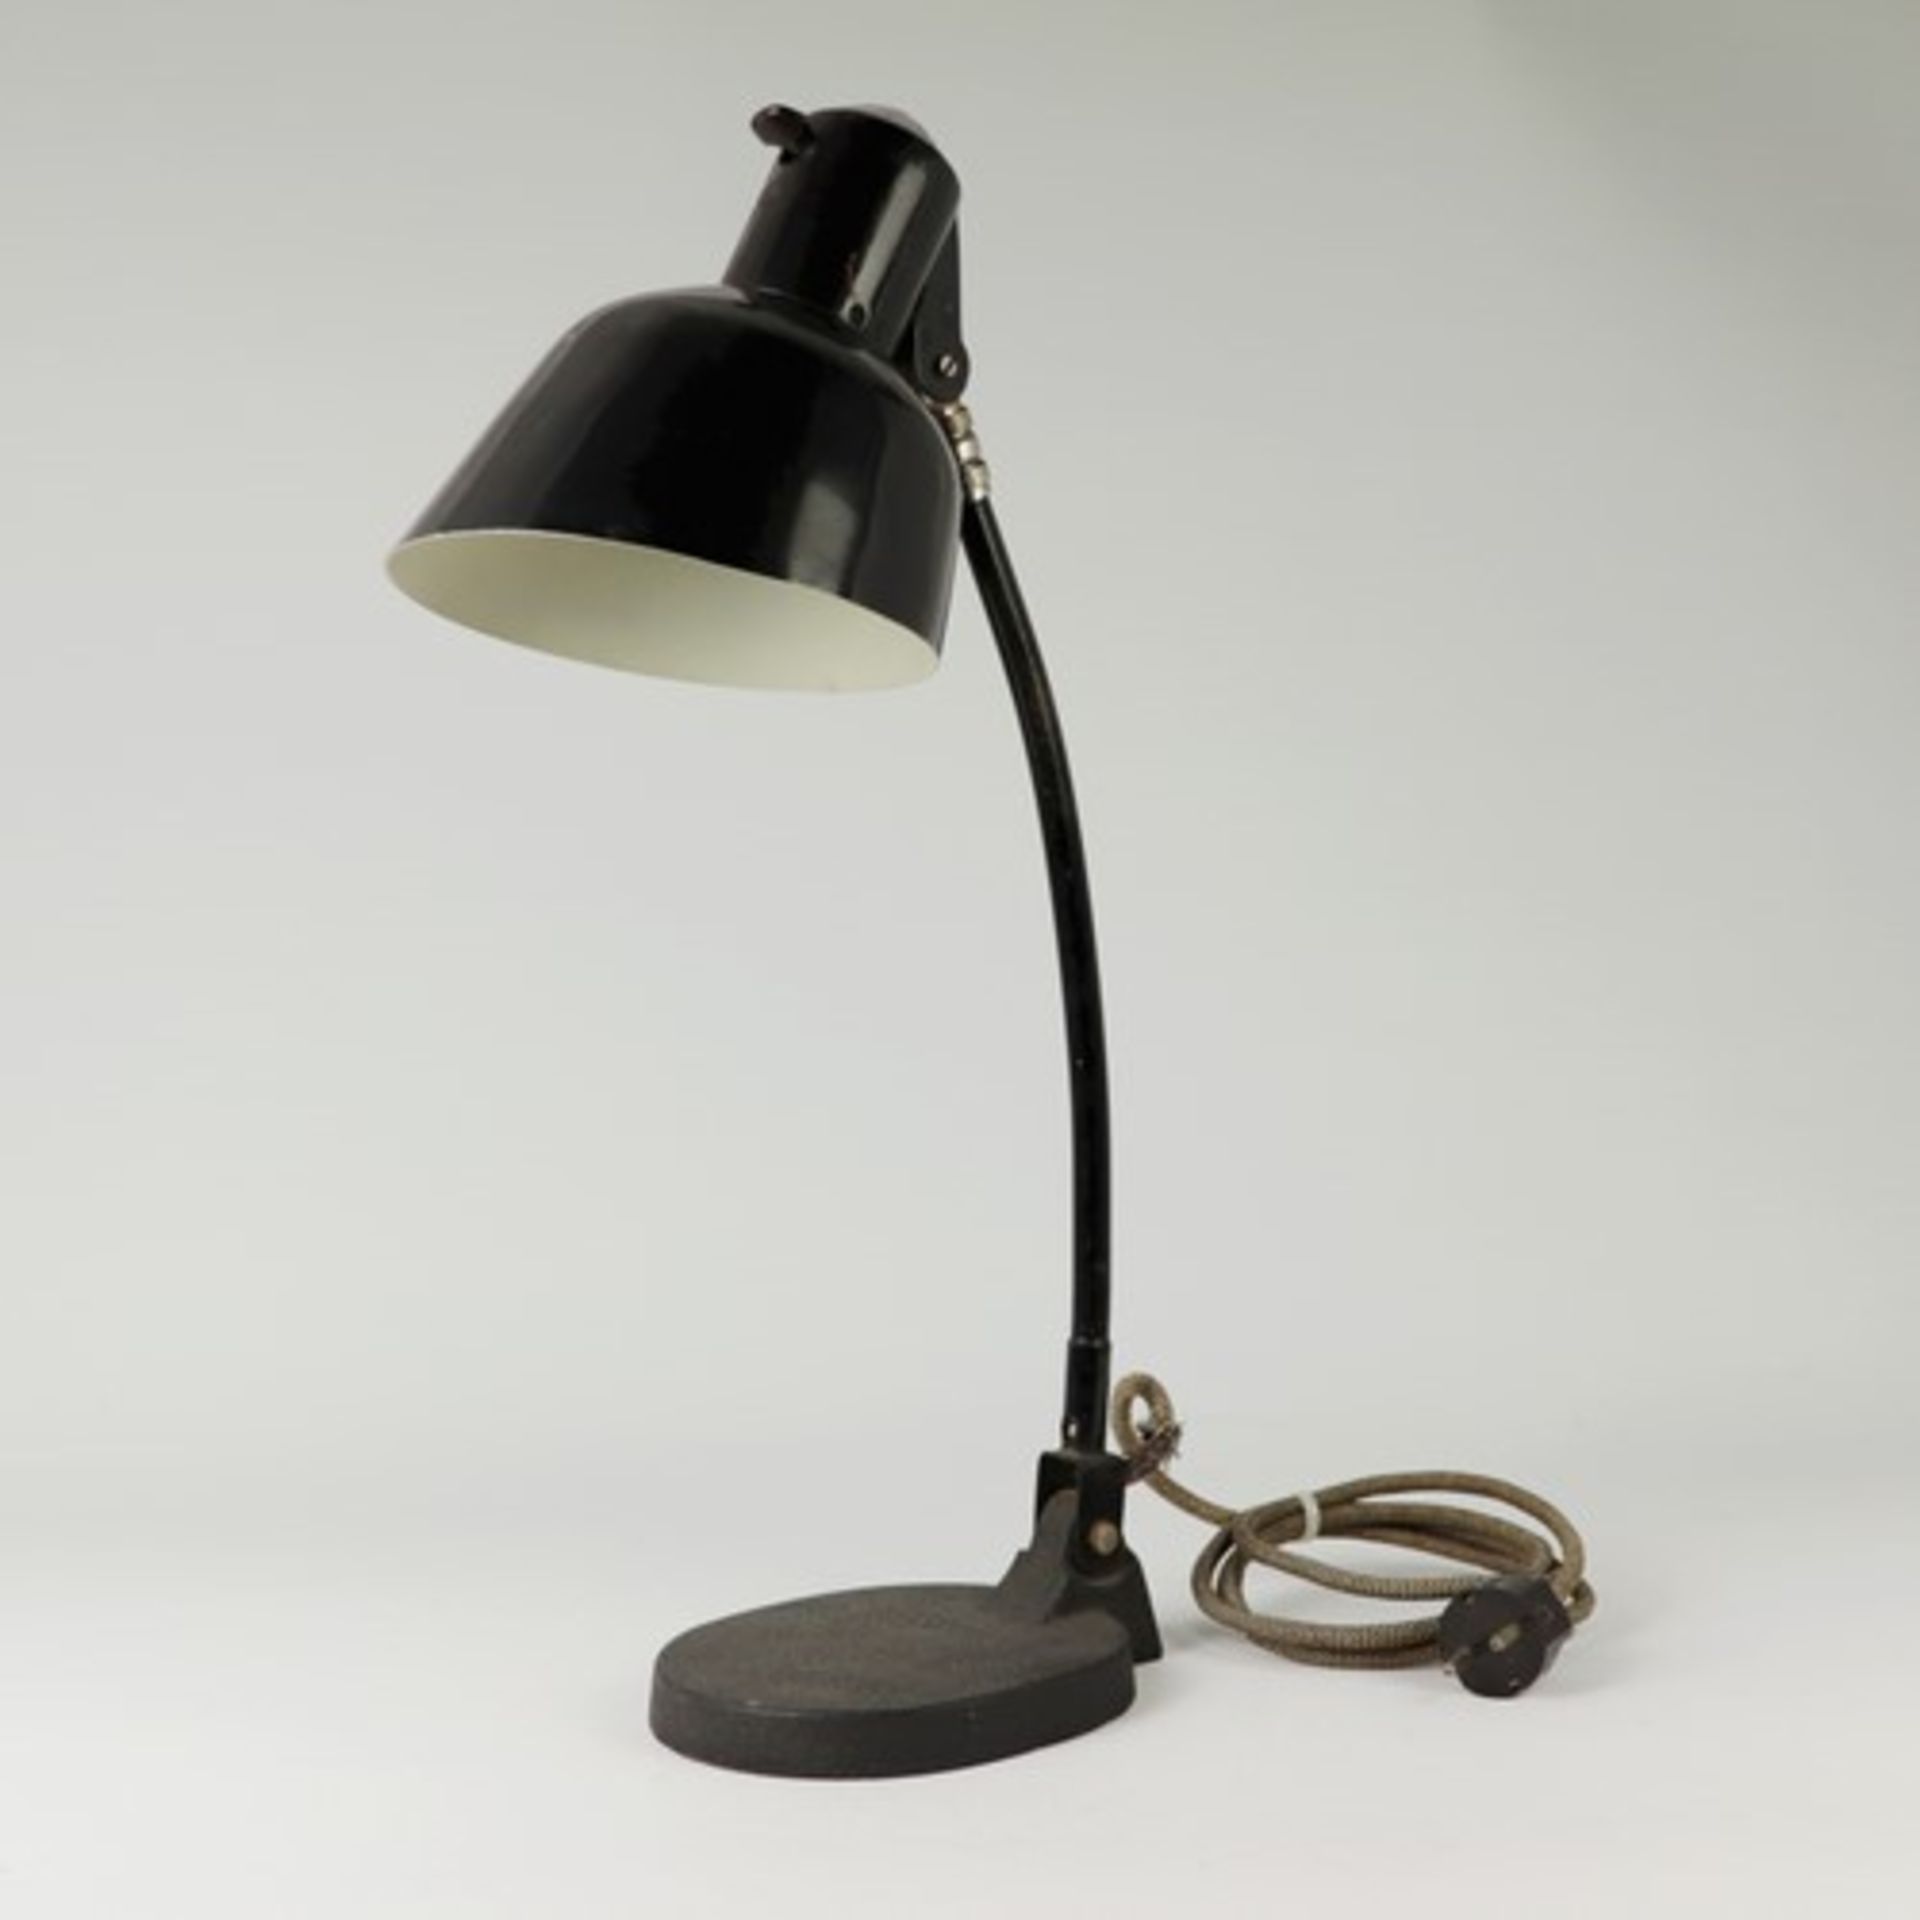 Tischlampe - Art-décoim Schirm bez., Prägemarke SIS, um 1920, Werkstattlampe/Gelenklampe